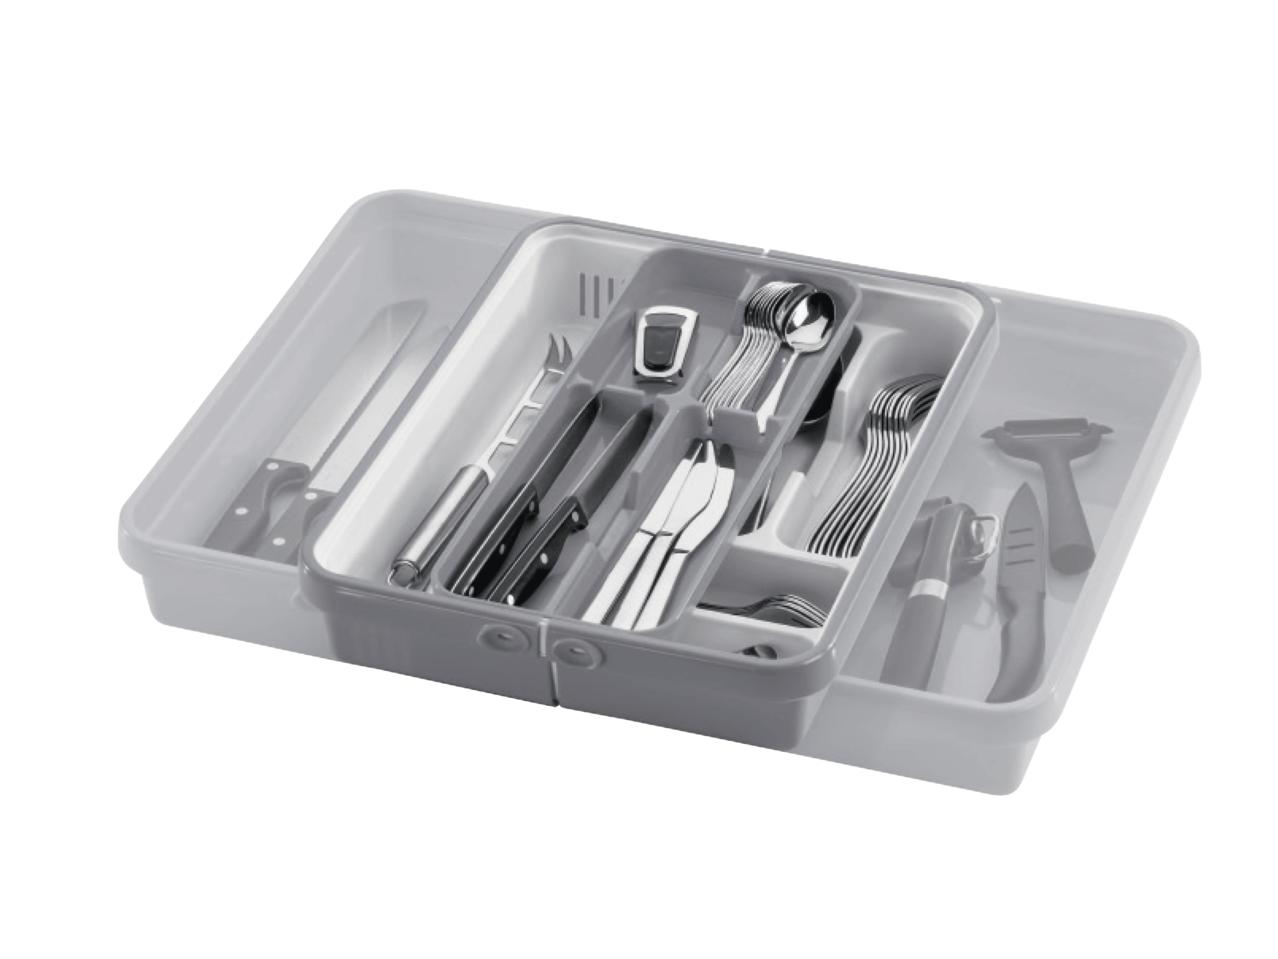 ERNESTO(R) Cutlery Tray/Dish Drainer